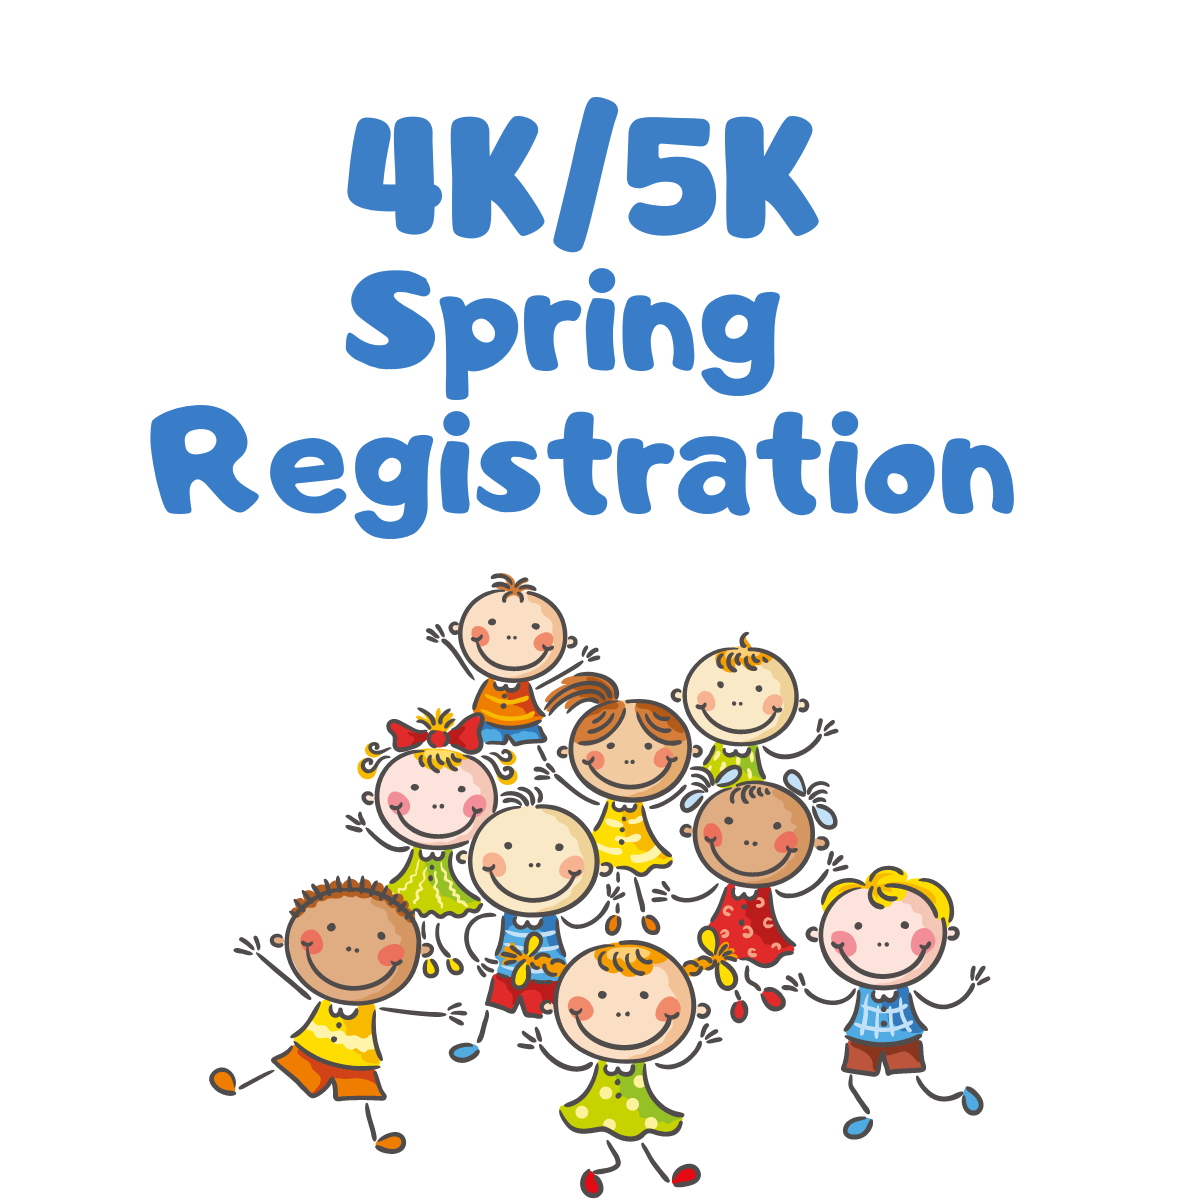 4k 5k Spring Registration